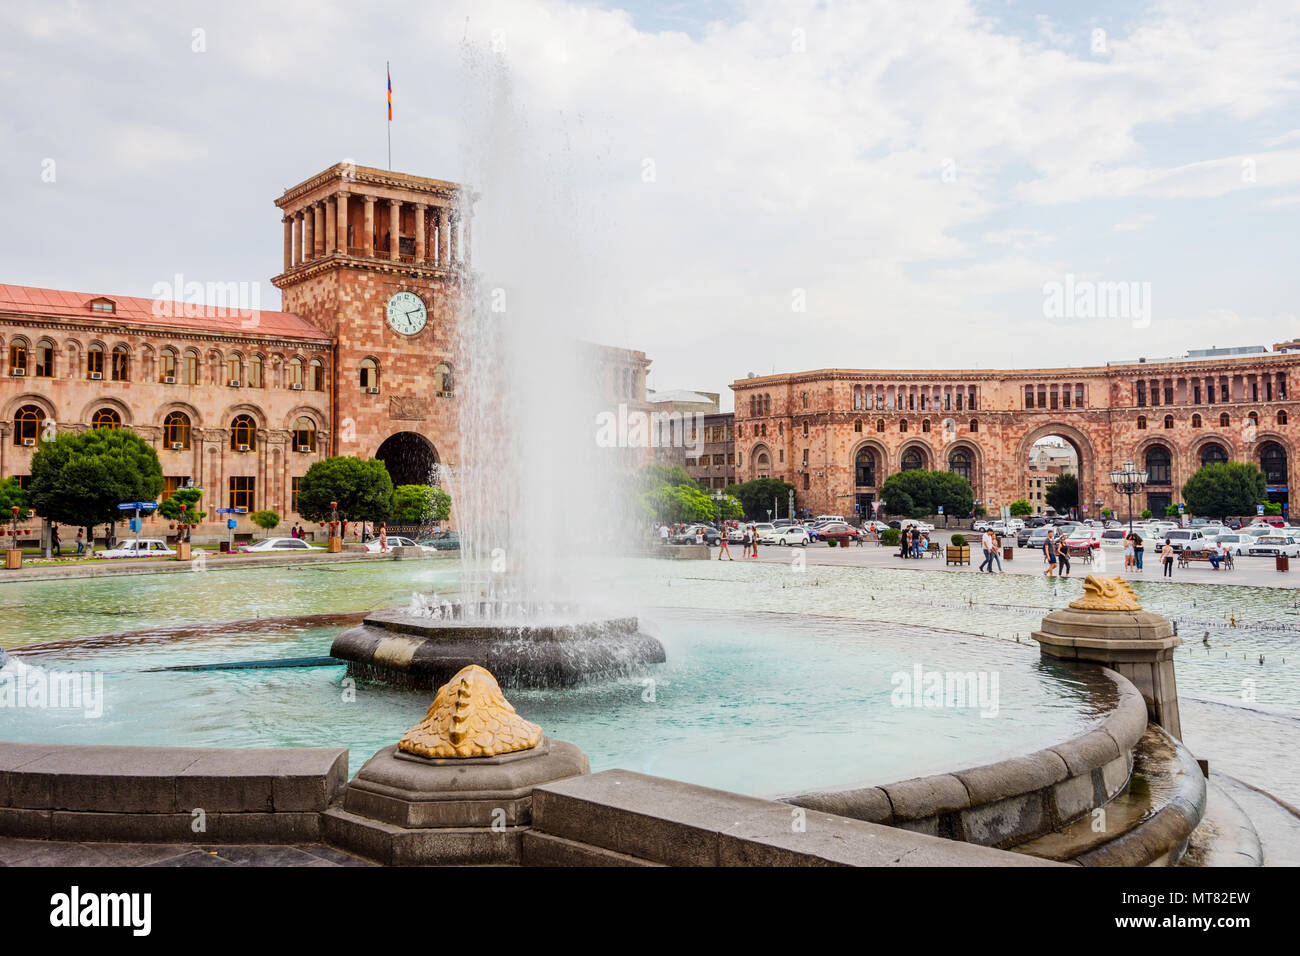 YEREVAN, Armenien - AUGUST 2: Platz der Republik mit dem Brunnen und Uhrturm in Armenien Hauptstadt. August 2017 Stockfoto